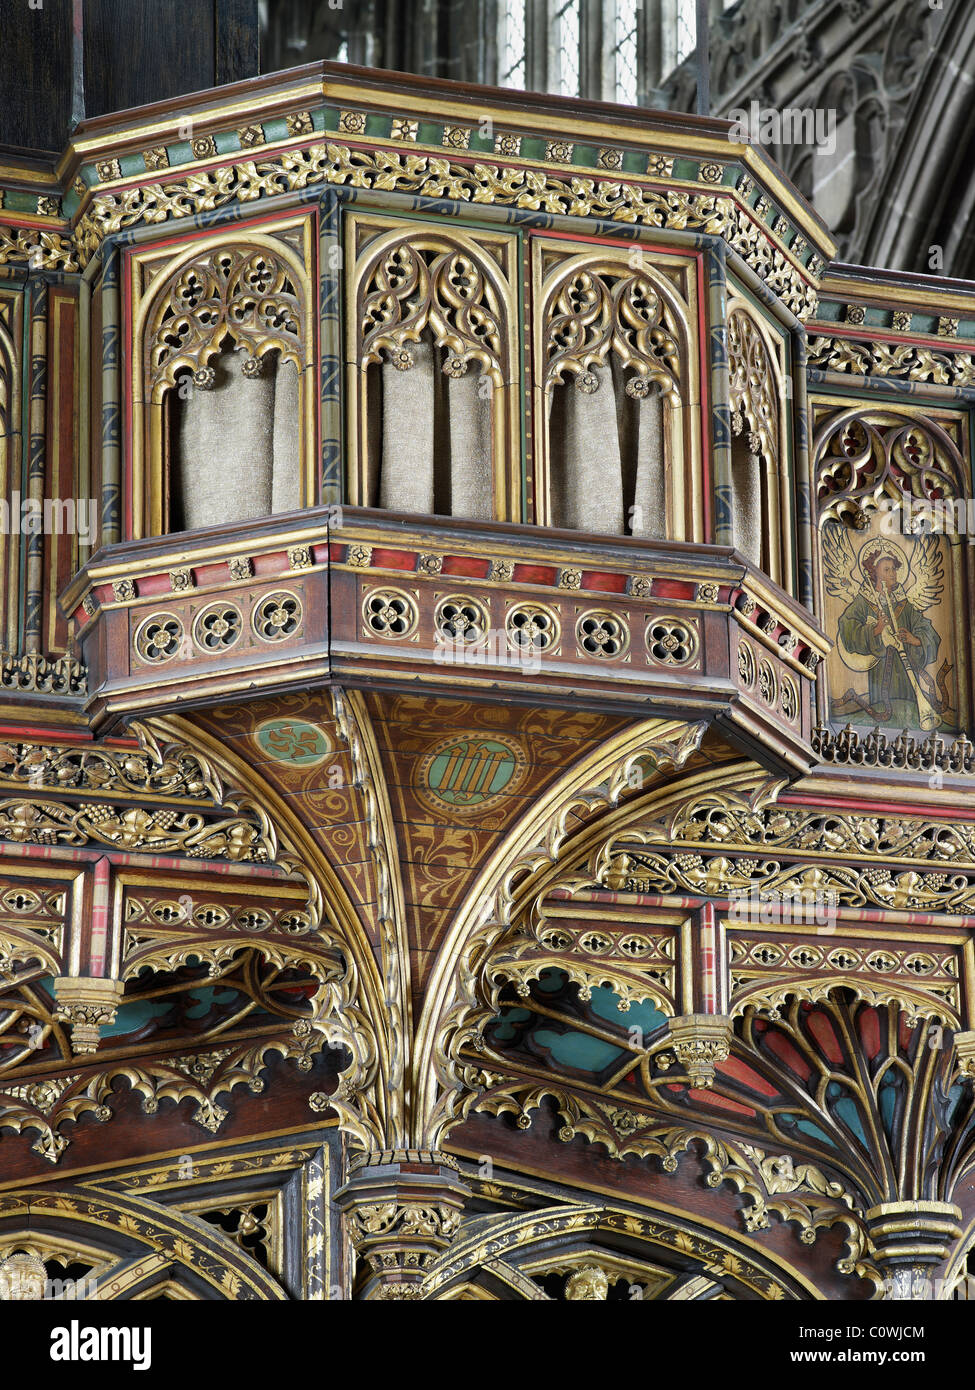 Manchester Cathedral Choir Bildschirm & Orgelempore Stockfoto